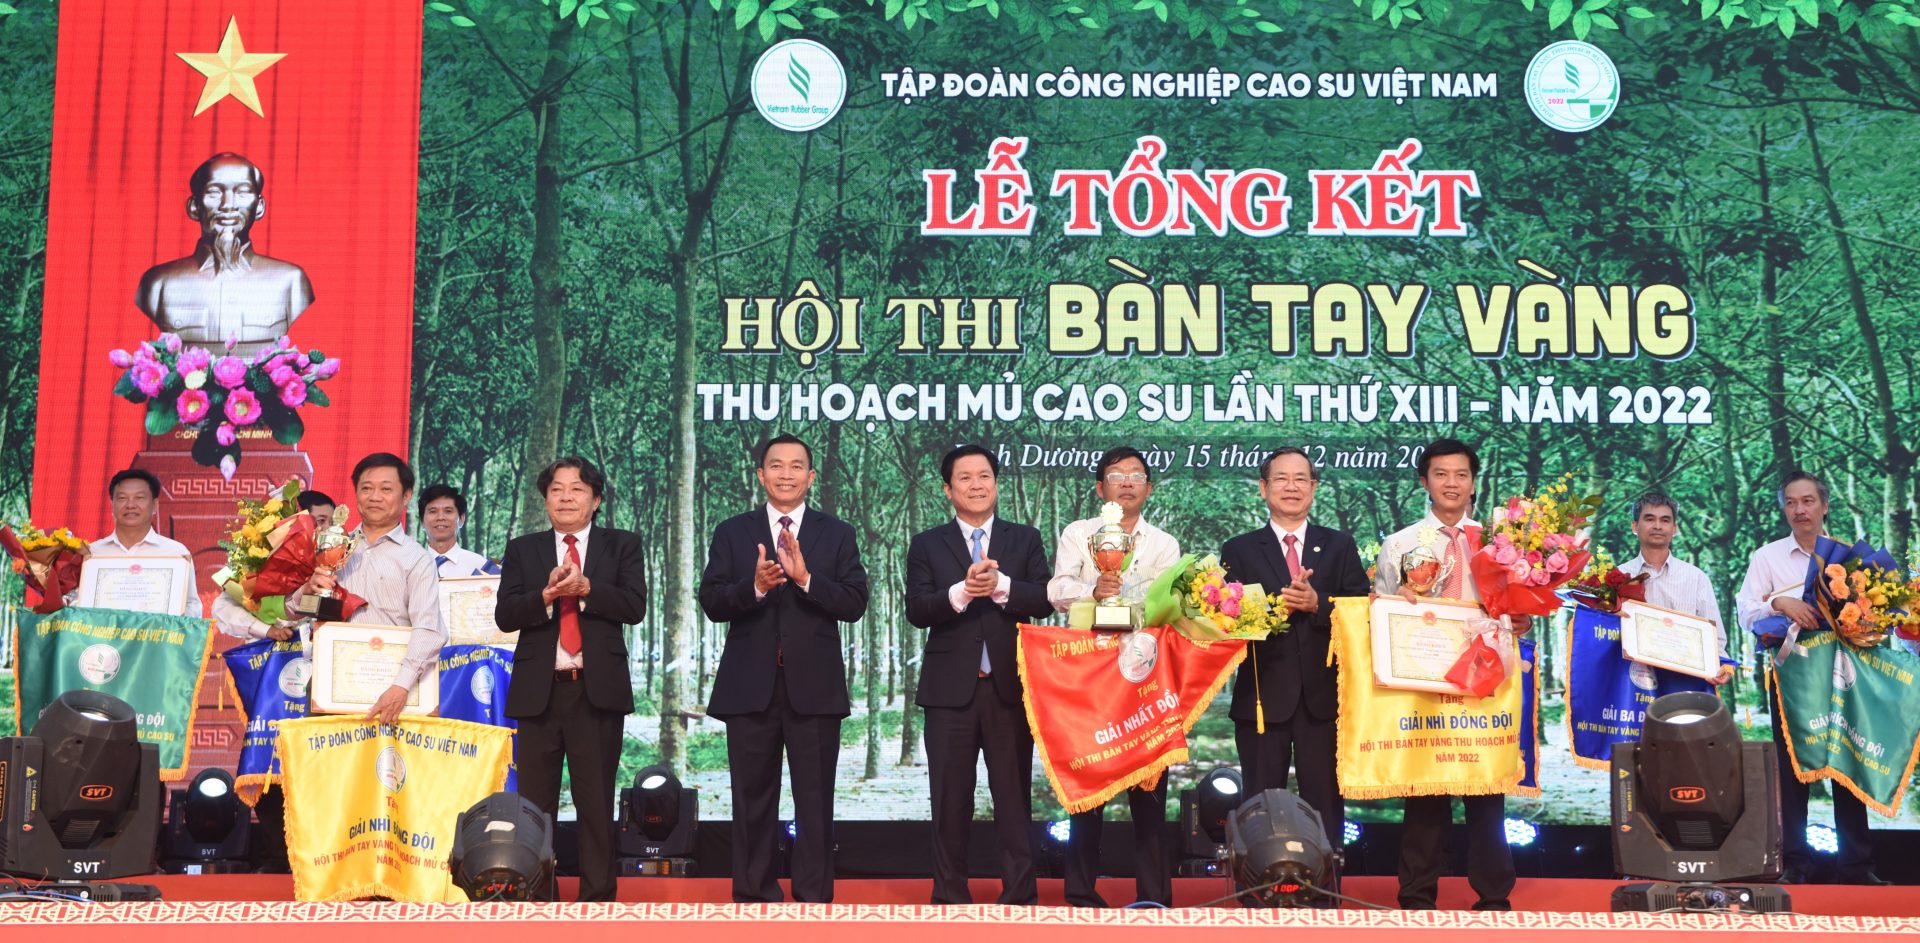 Lãnh đạo VRG trao giải Nhất đồng đội cho Cao su Phú Thịnh.